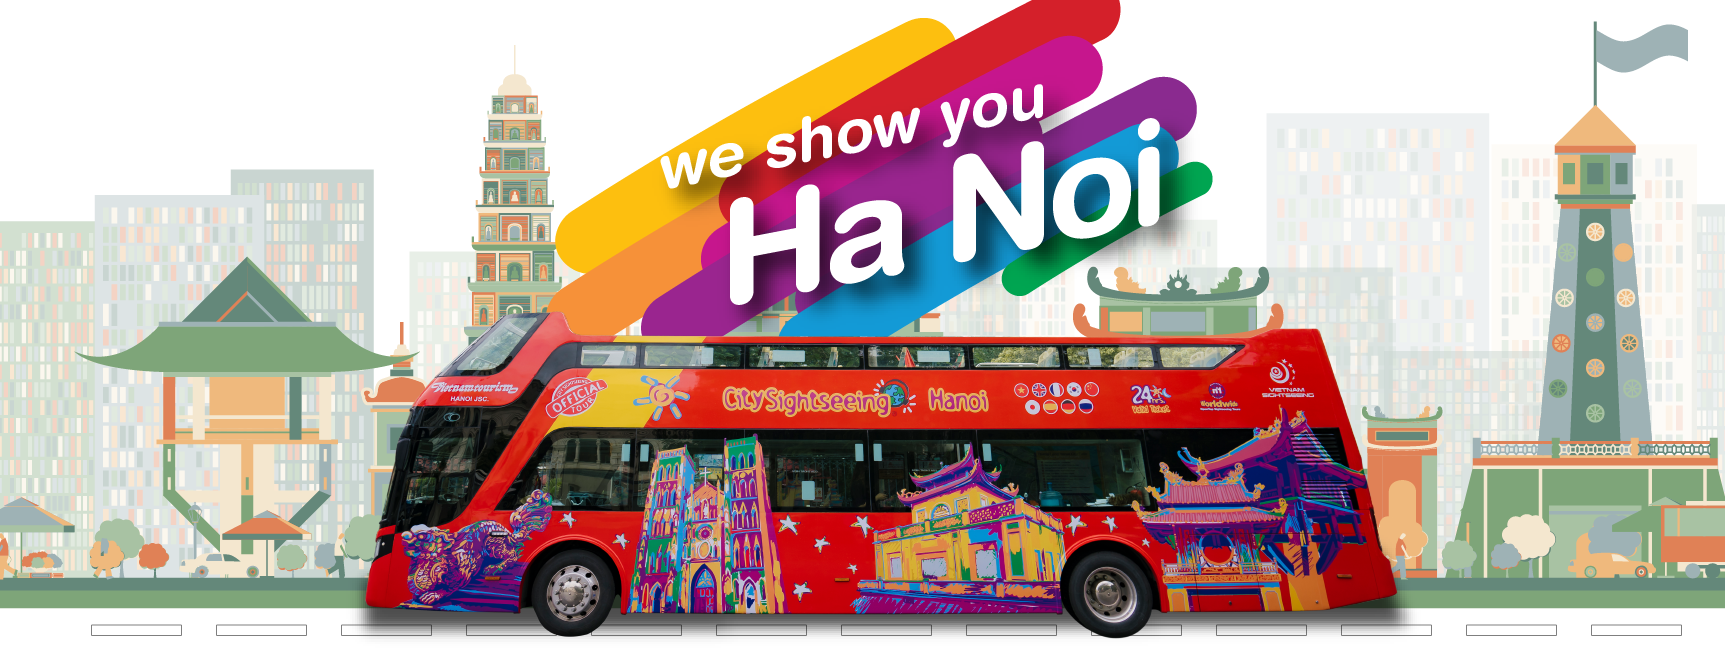 Khám phá Hà Nội một cách mới mẻ với tour Hanoi Hop-On Hop-Off Bus. Nó giúp bạn dễ dàng di chuyển để khám phá những địa điểm nổi tiếng và đắt ghi dấu trong lòng người dân. Hãy cùng trải nghiệm đôi dầy nhiều tầng thú vị này để khám phá thêm về Hà Nội quyến rũ nhé.